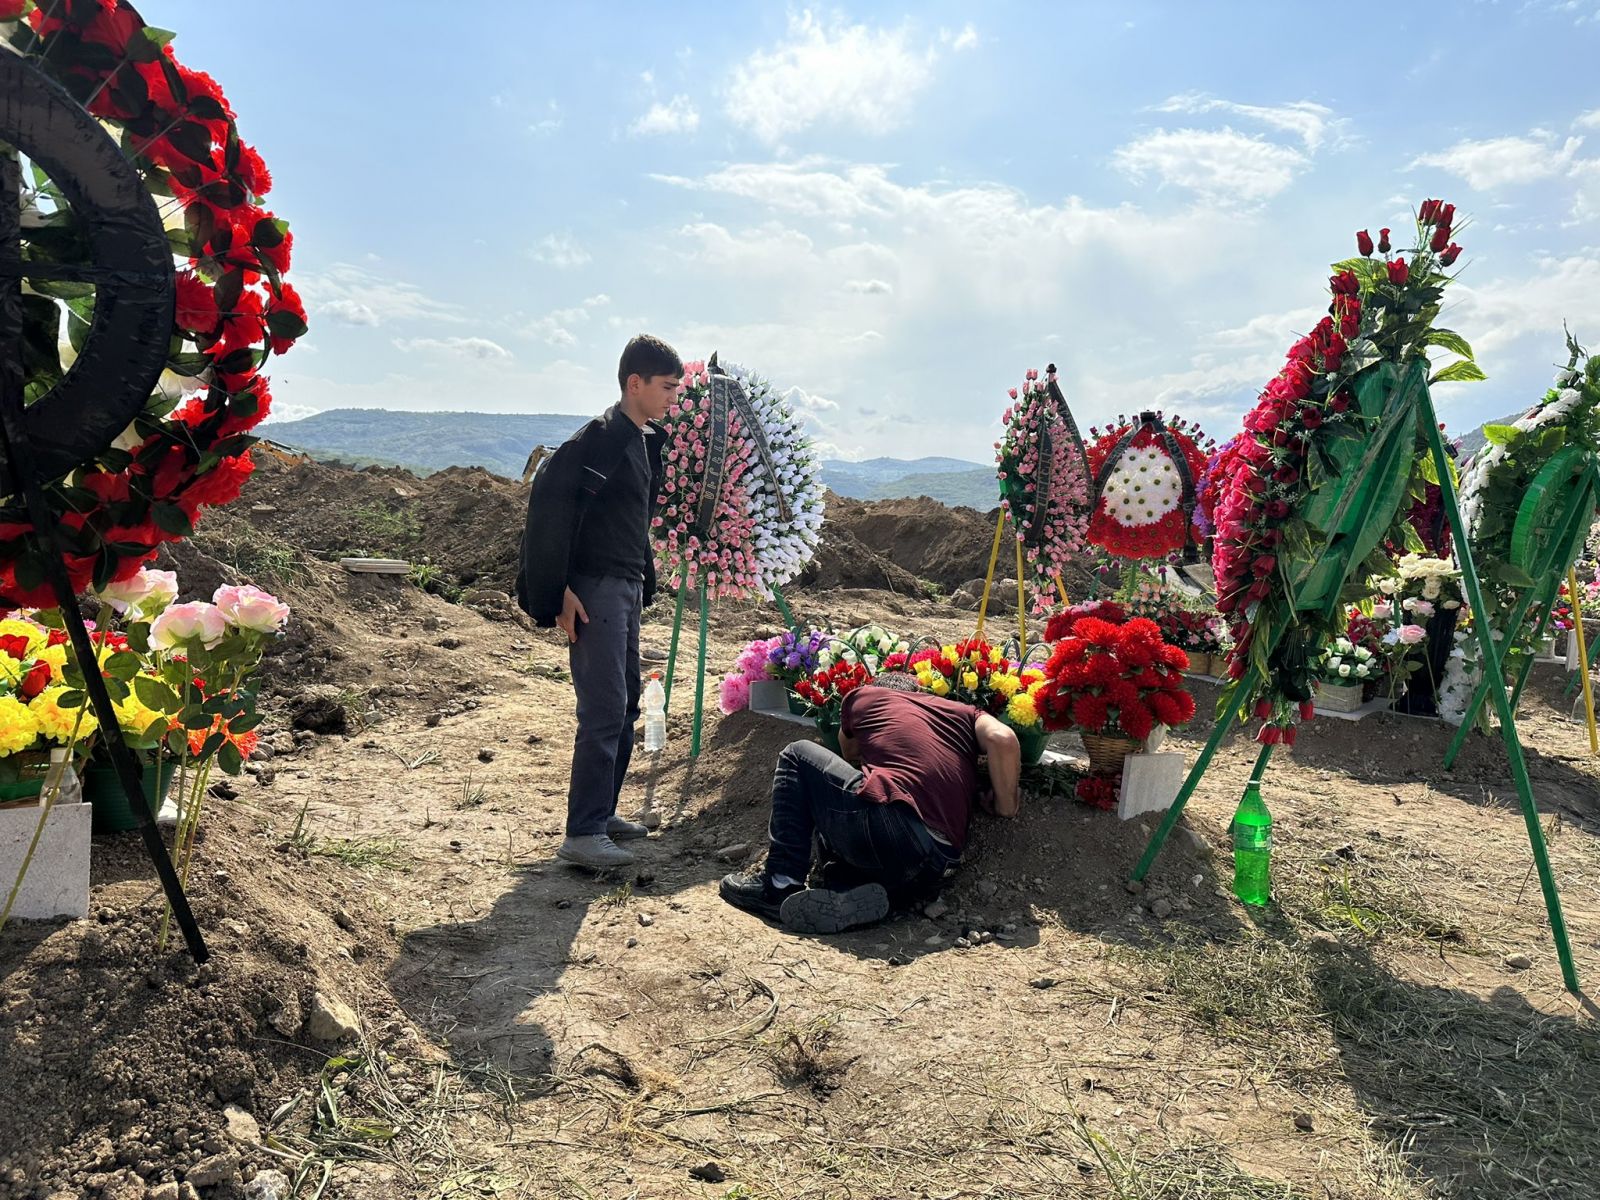 Շատերը համոզված են, որ ադրբեջանցիները ոչնչացնելու են.Արցախի հայերը դիմել են Կարմիր Խաչին՝ իրենց հարազատներին վերահուղարկավորելու խնդրանքով